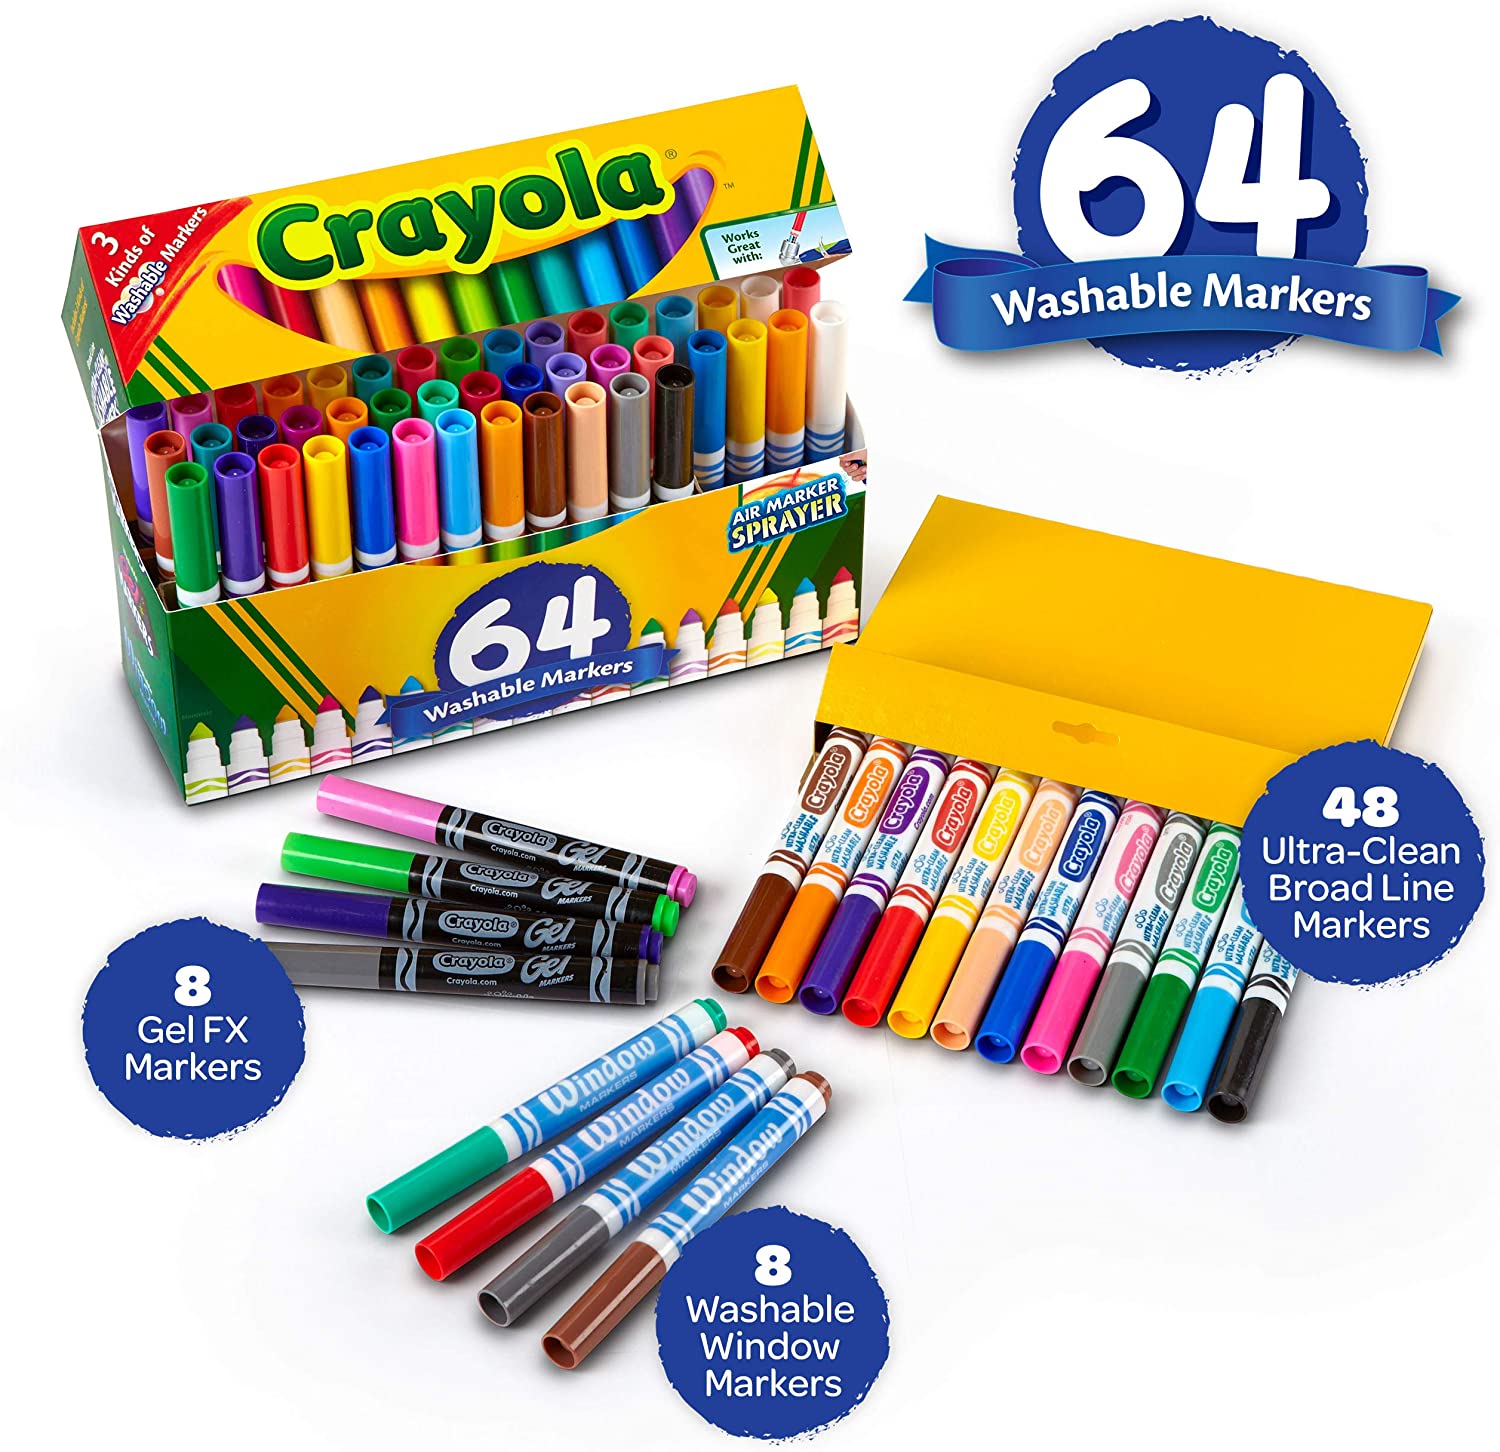 Crayola Ultra-Clean Washable Crayon Sets